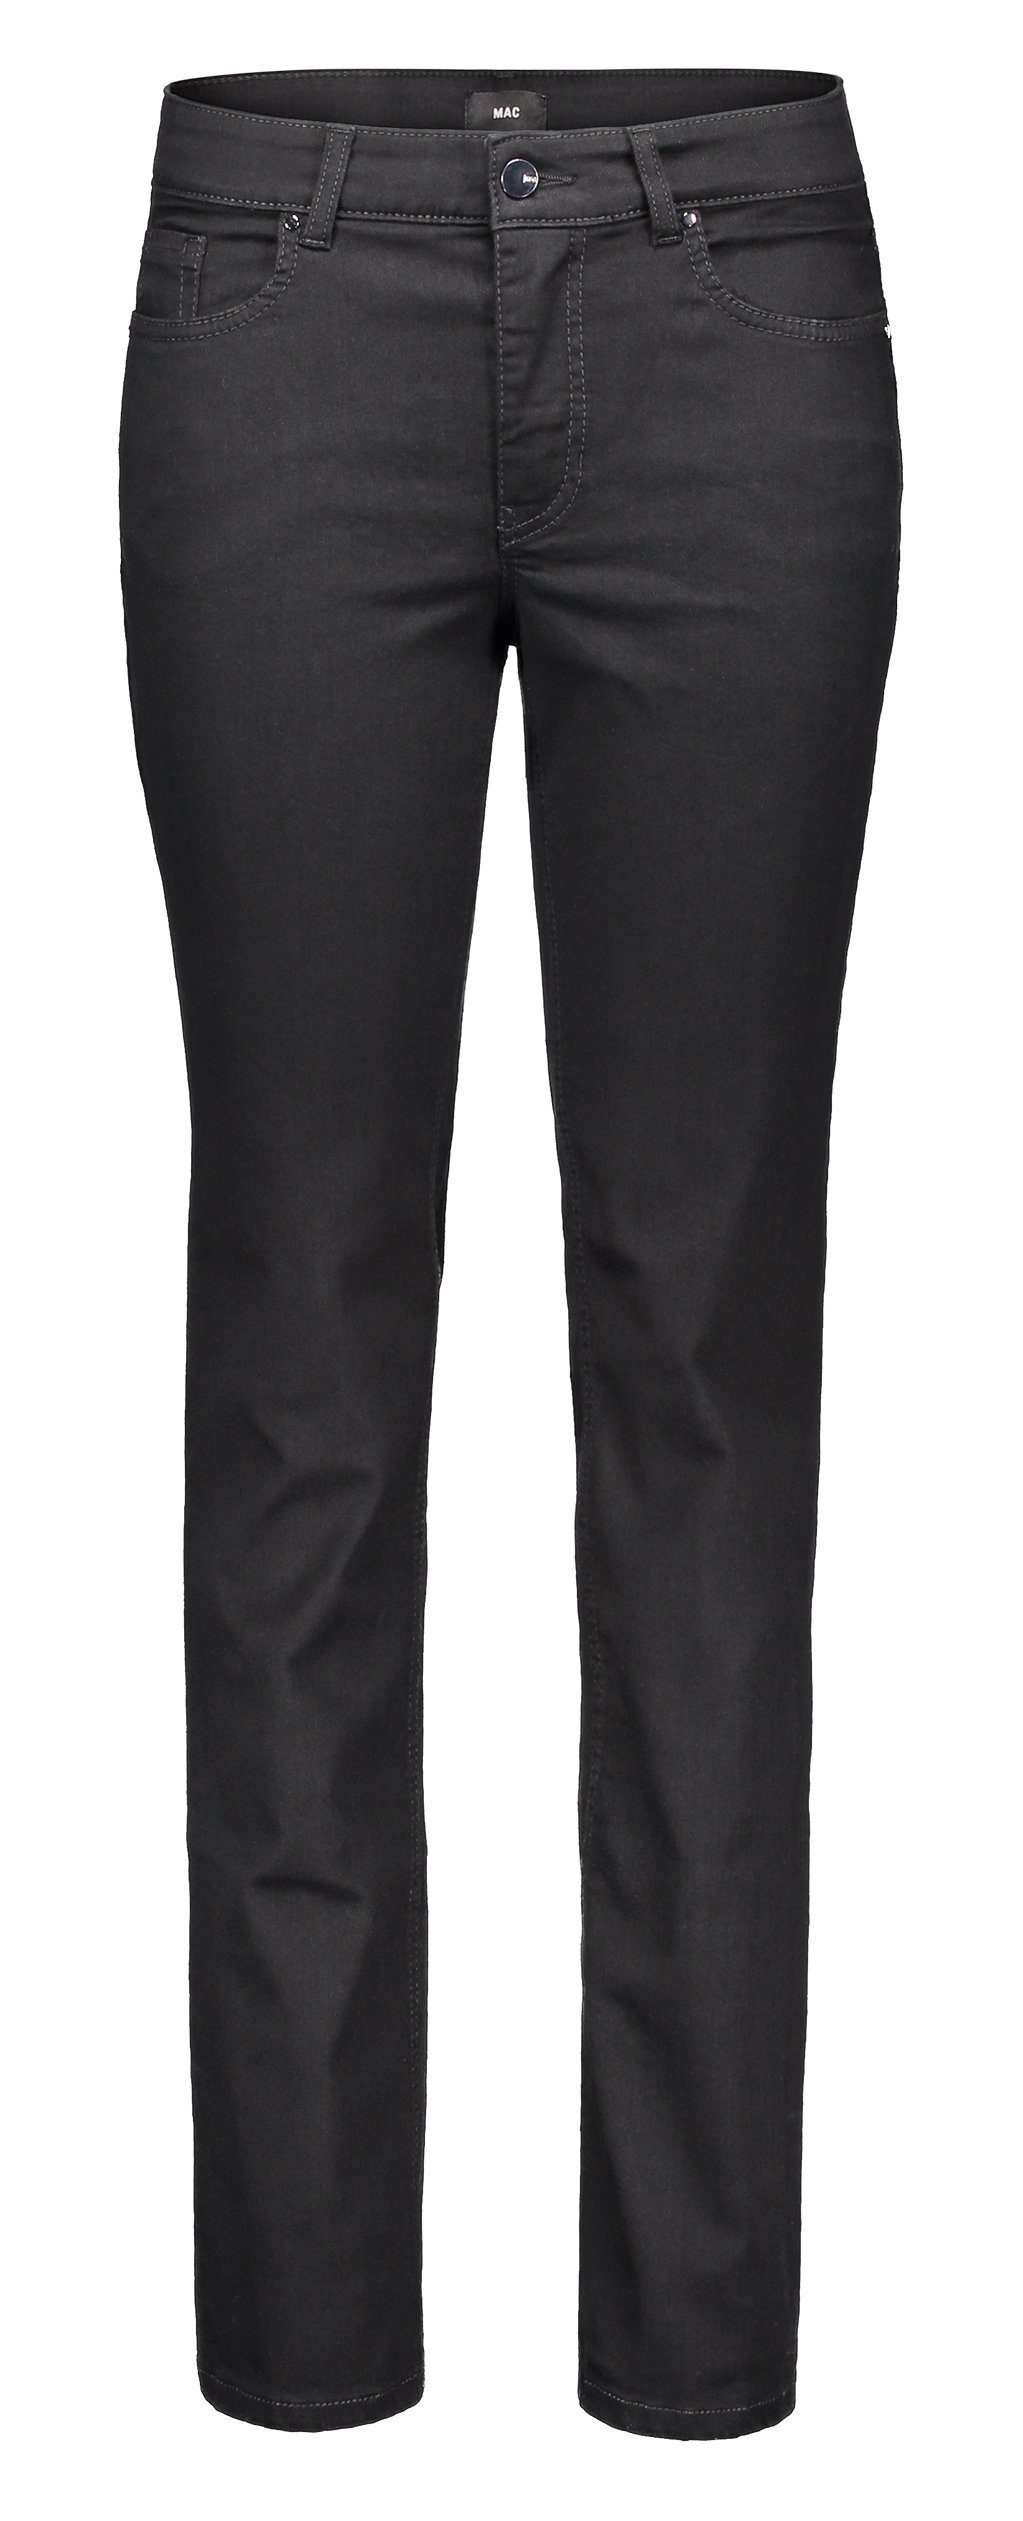 【Auffüllen】 MAC Stretch-Jeans MAC 5040-87-0380L-D999 black MELANIE black